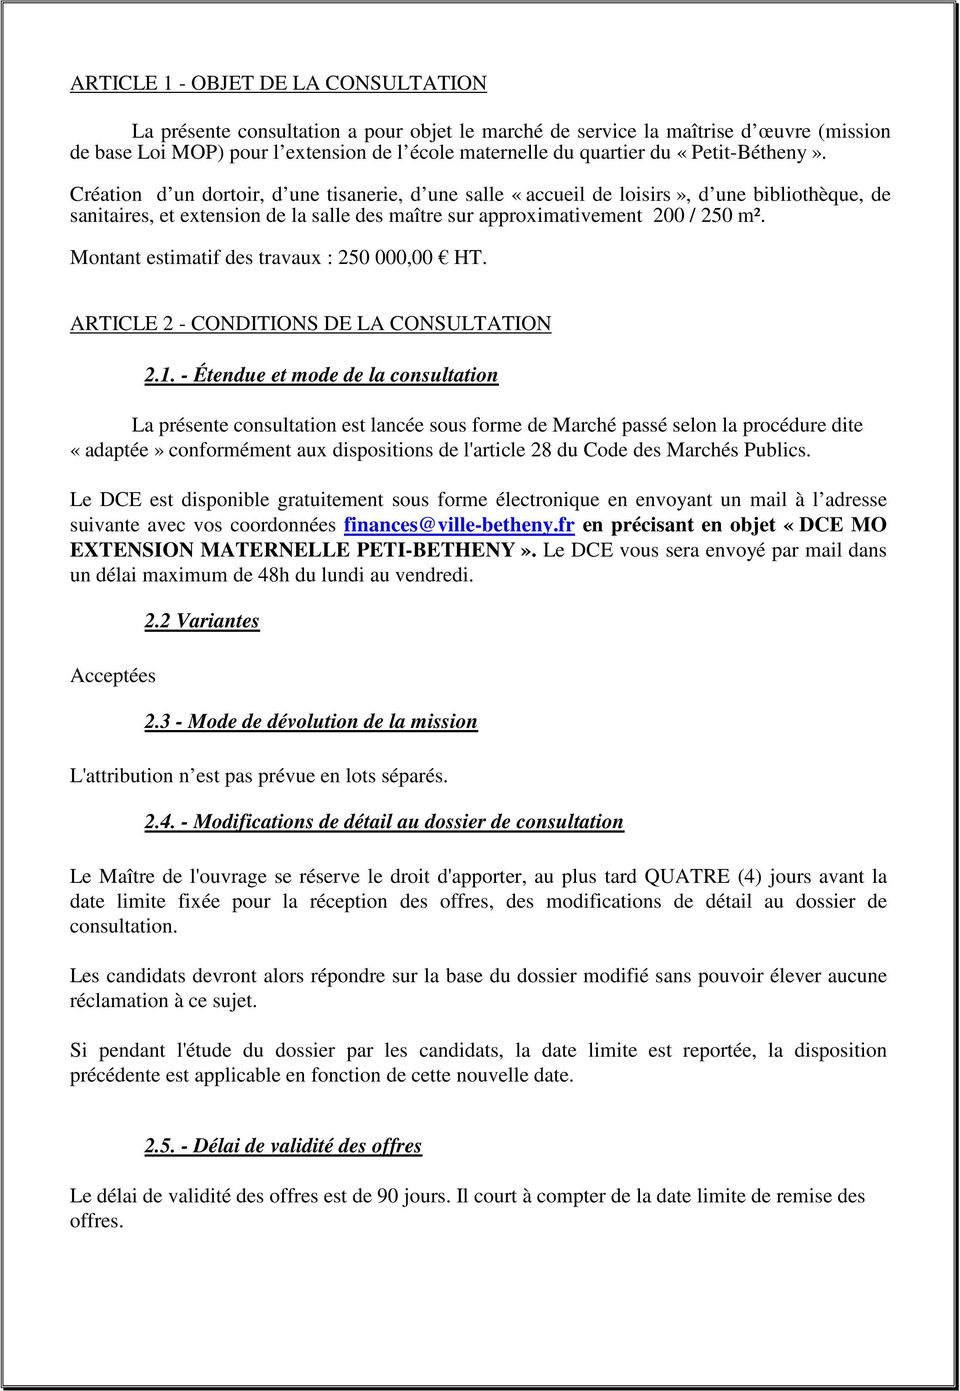 Montant estimatif des travaux : 250 000,00 HT. ARTICLE 2 - CONDITIONS DE LA CONSULTATION 2.1.